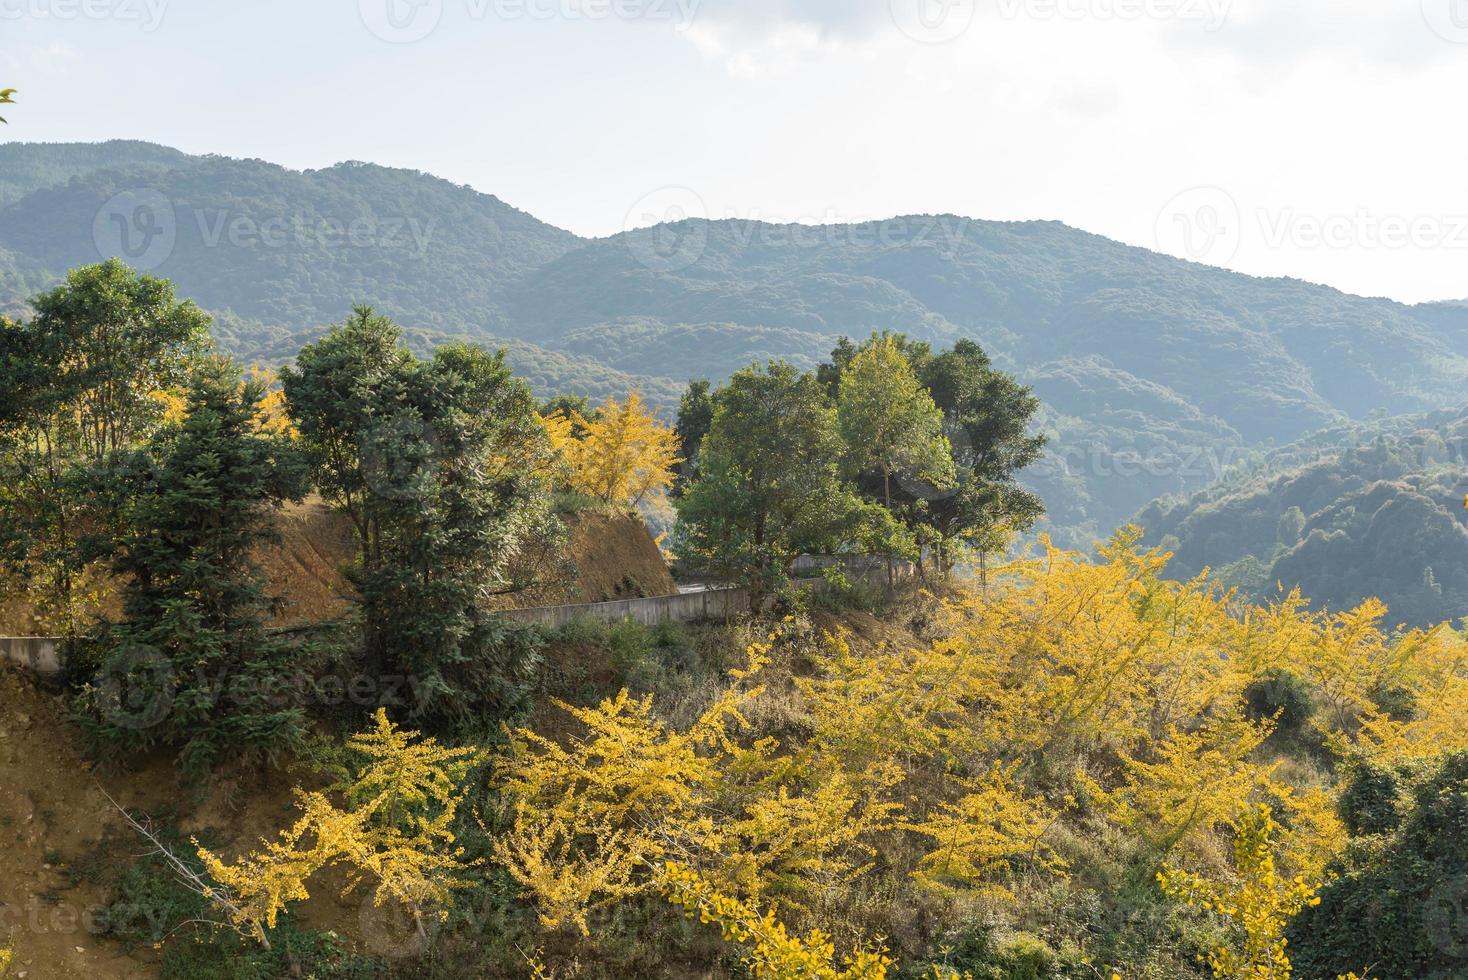 les feuilles des arbres de ginkgo sur la colline jaunissent en automne photo